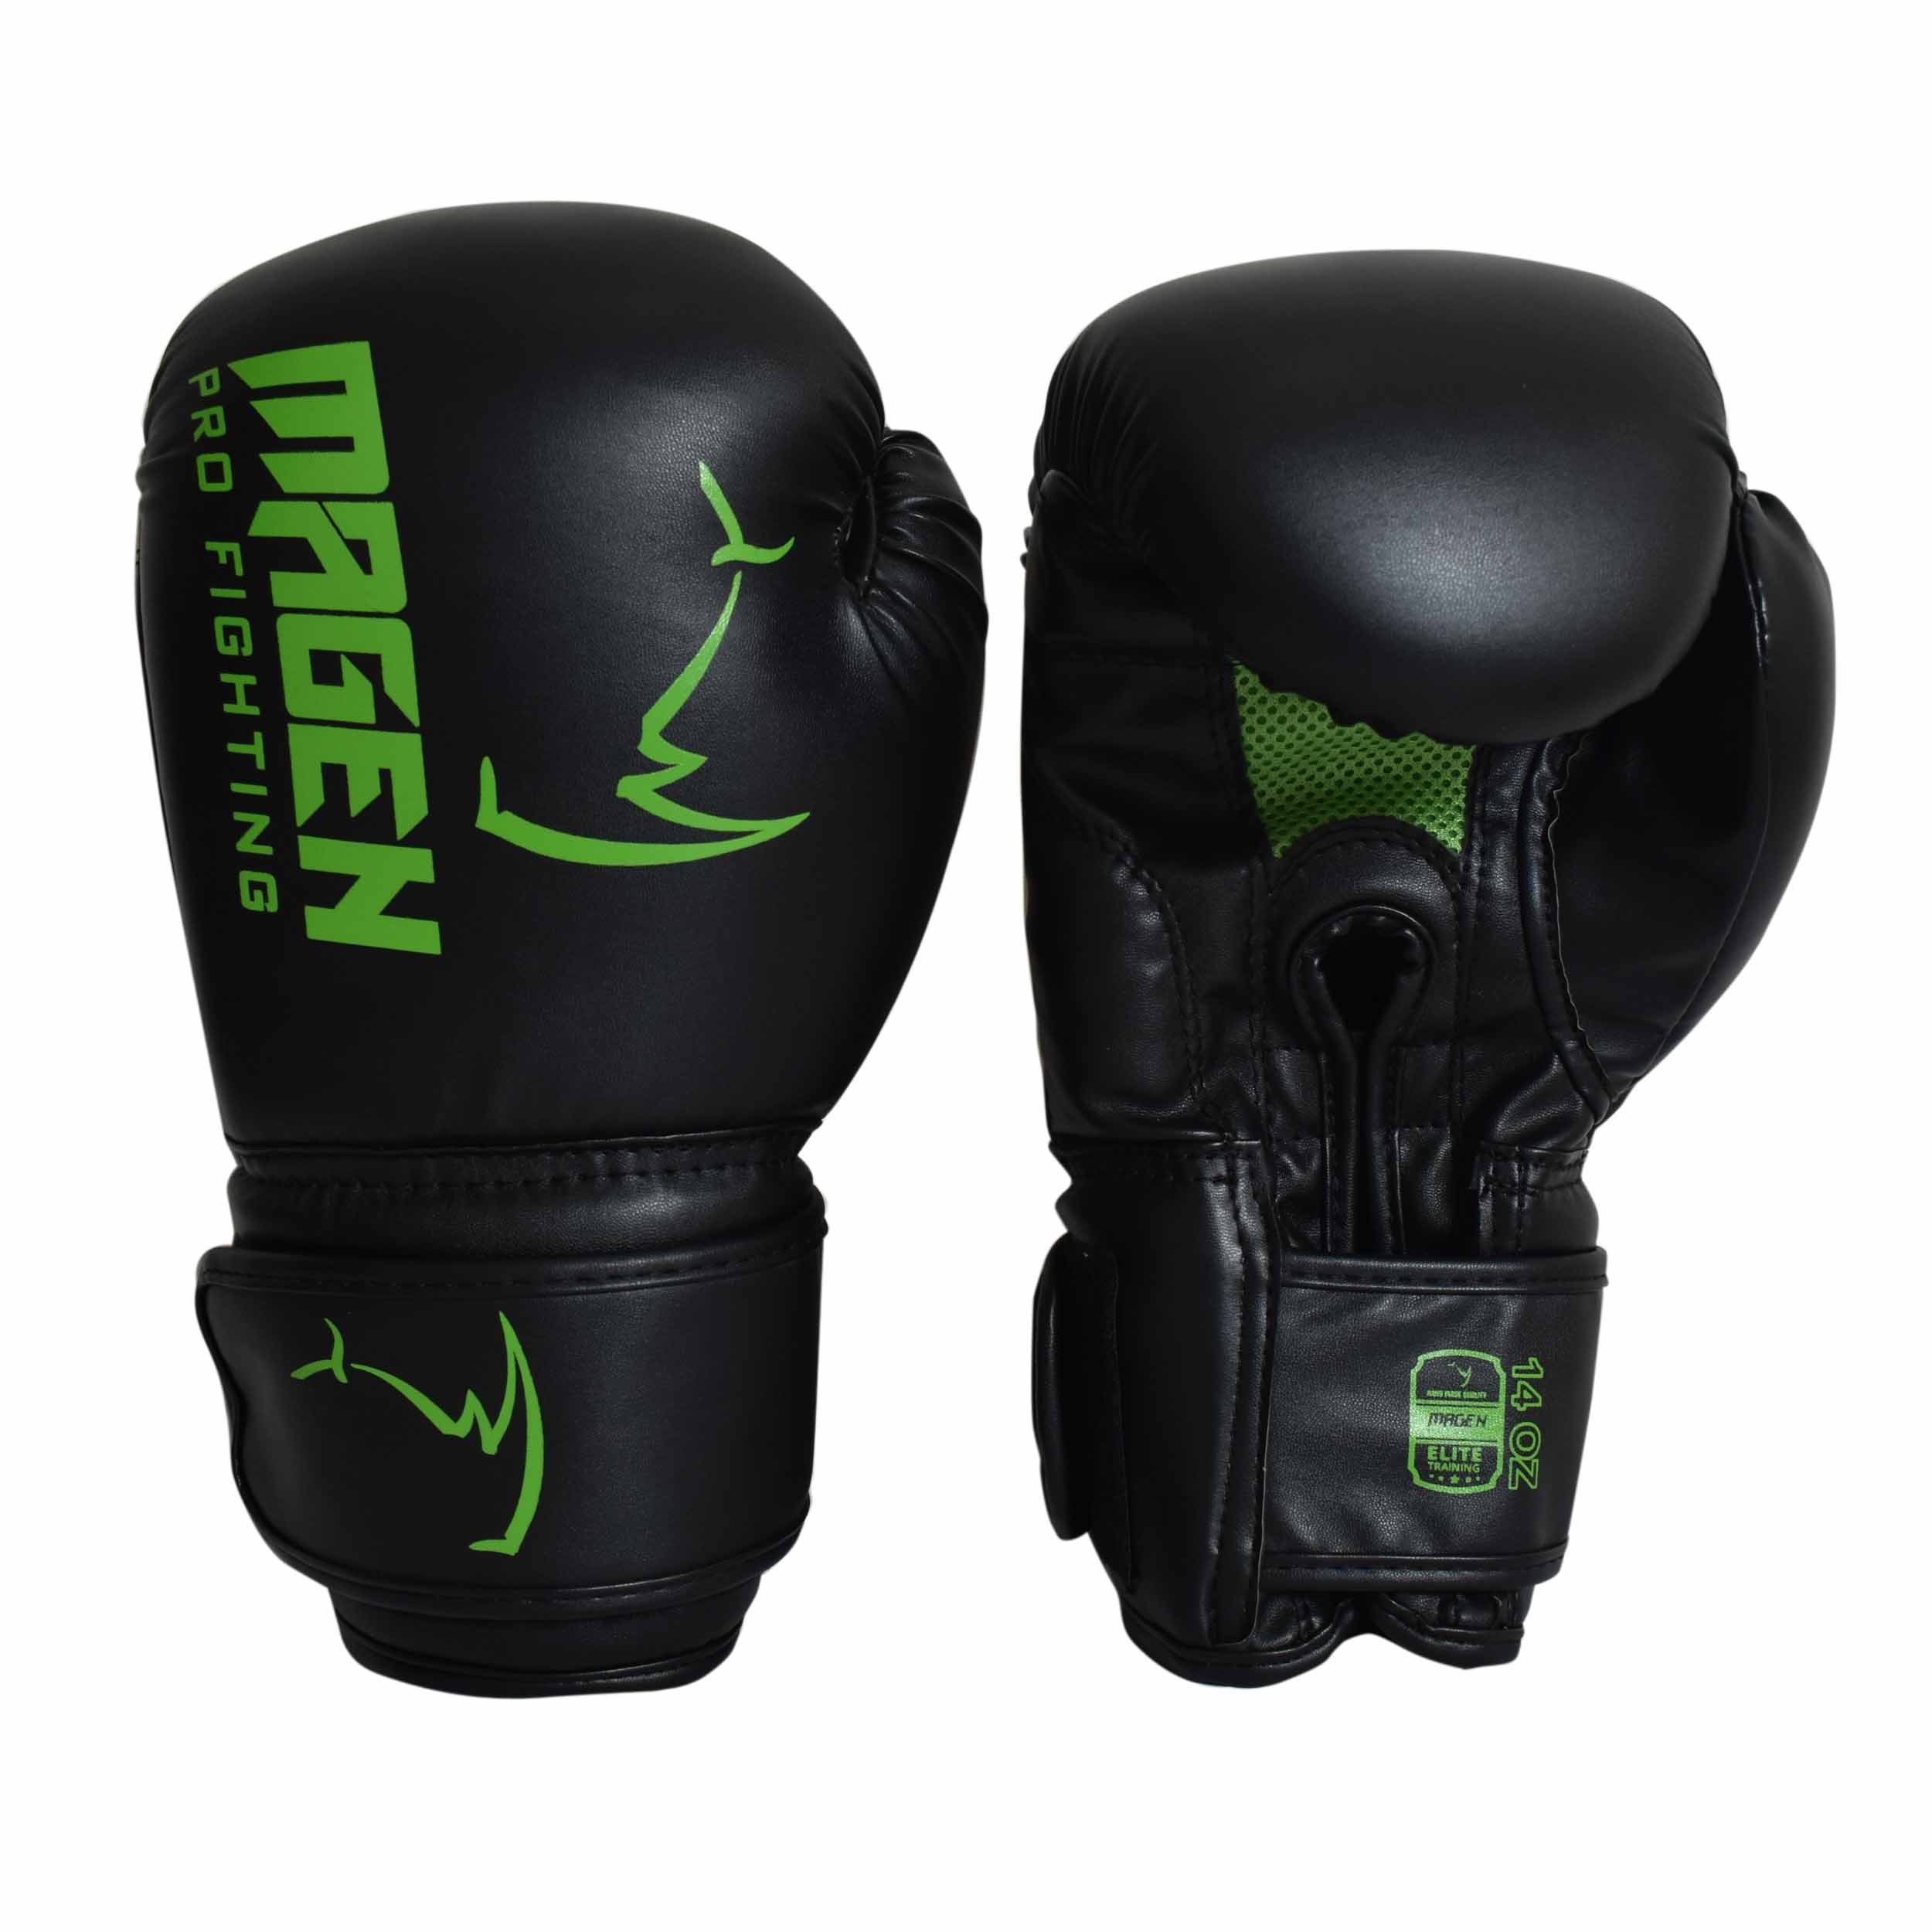 כפפות איגרוף מגן - לוגו ירוק - magen boxing